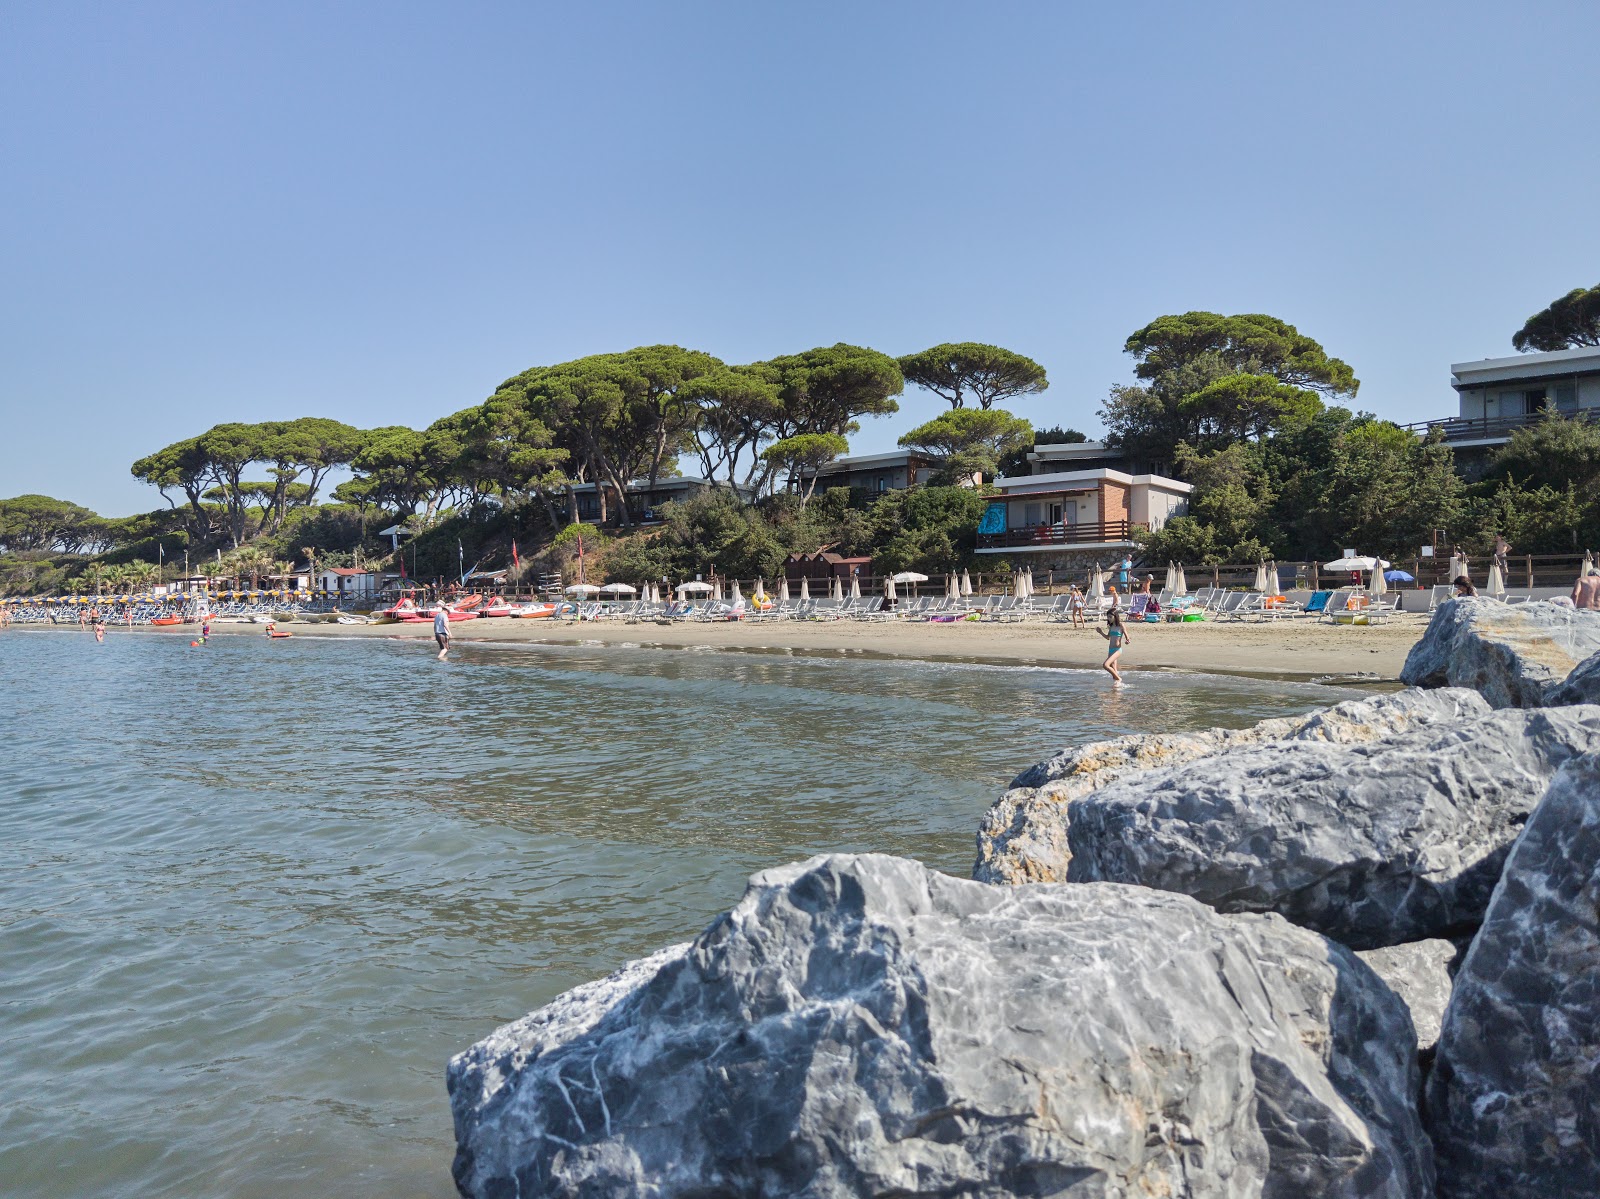 Foto de Spiaggia Golfo del Sole - lugar popular entre los conocedores del relax